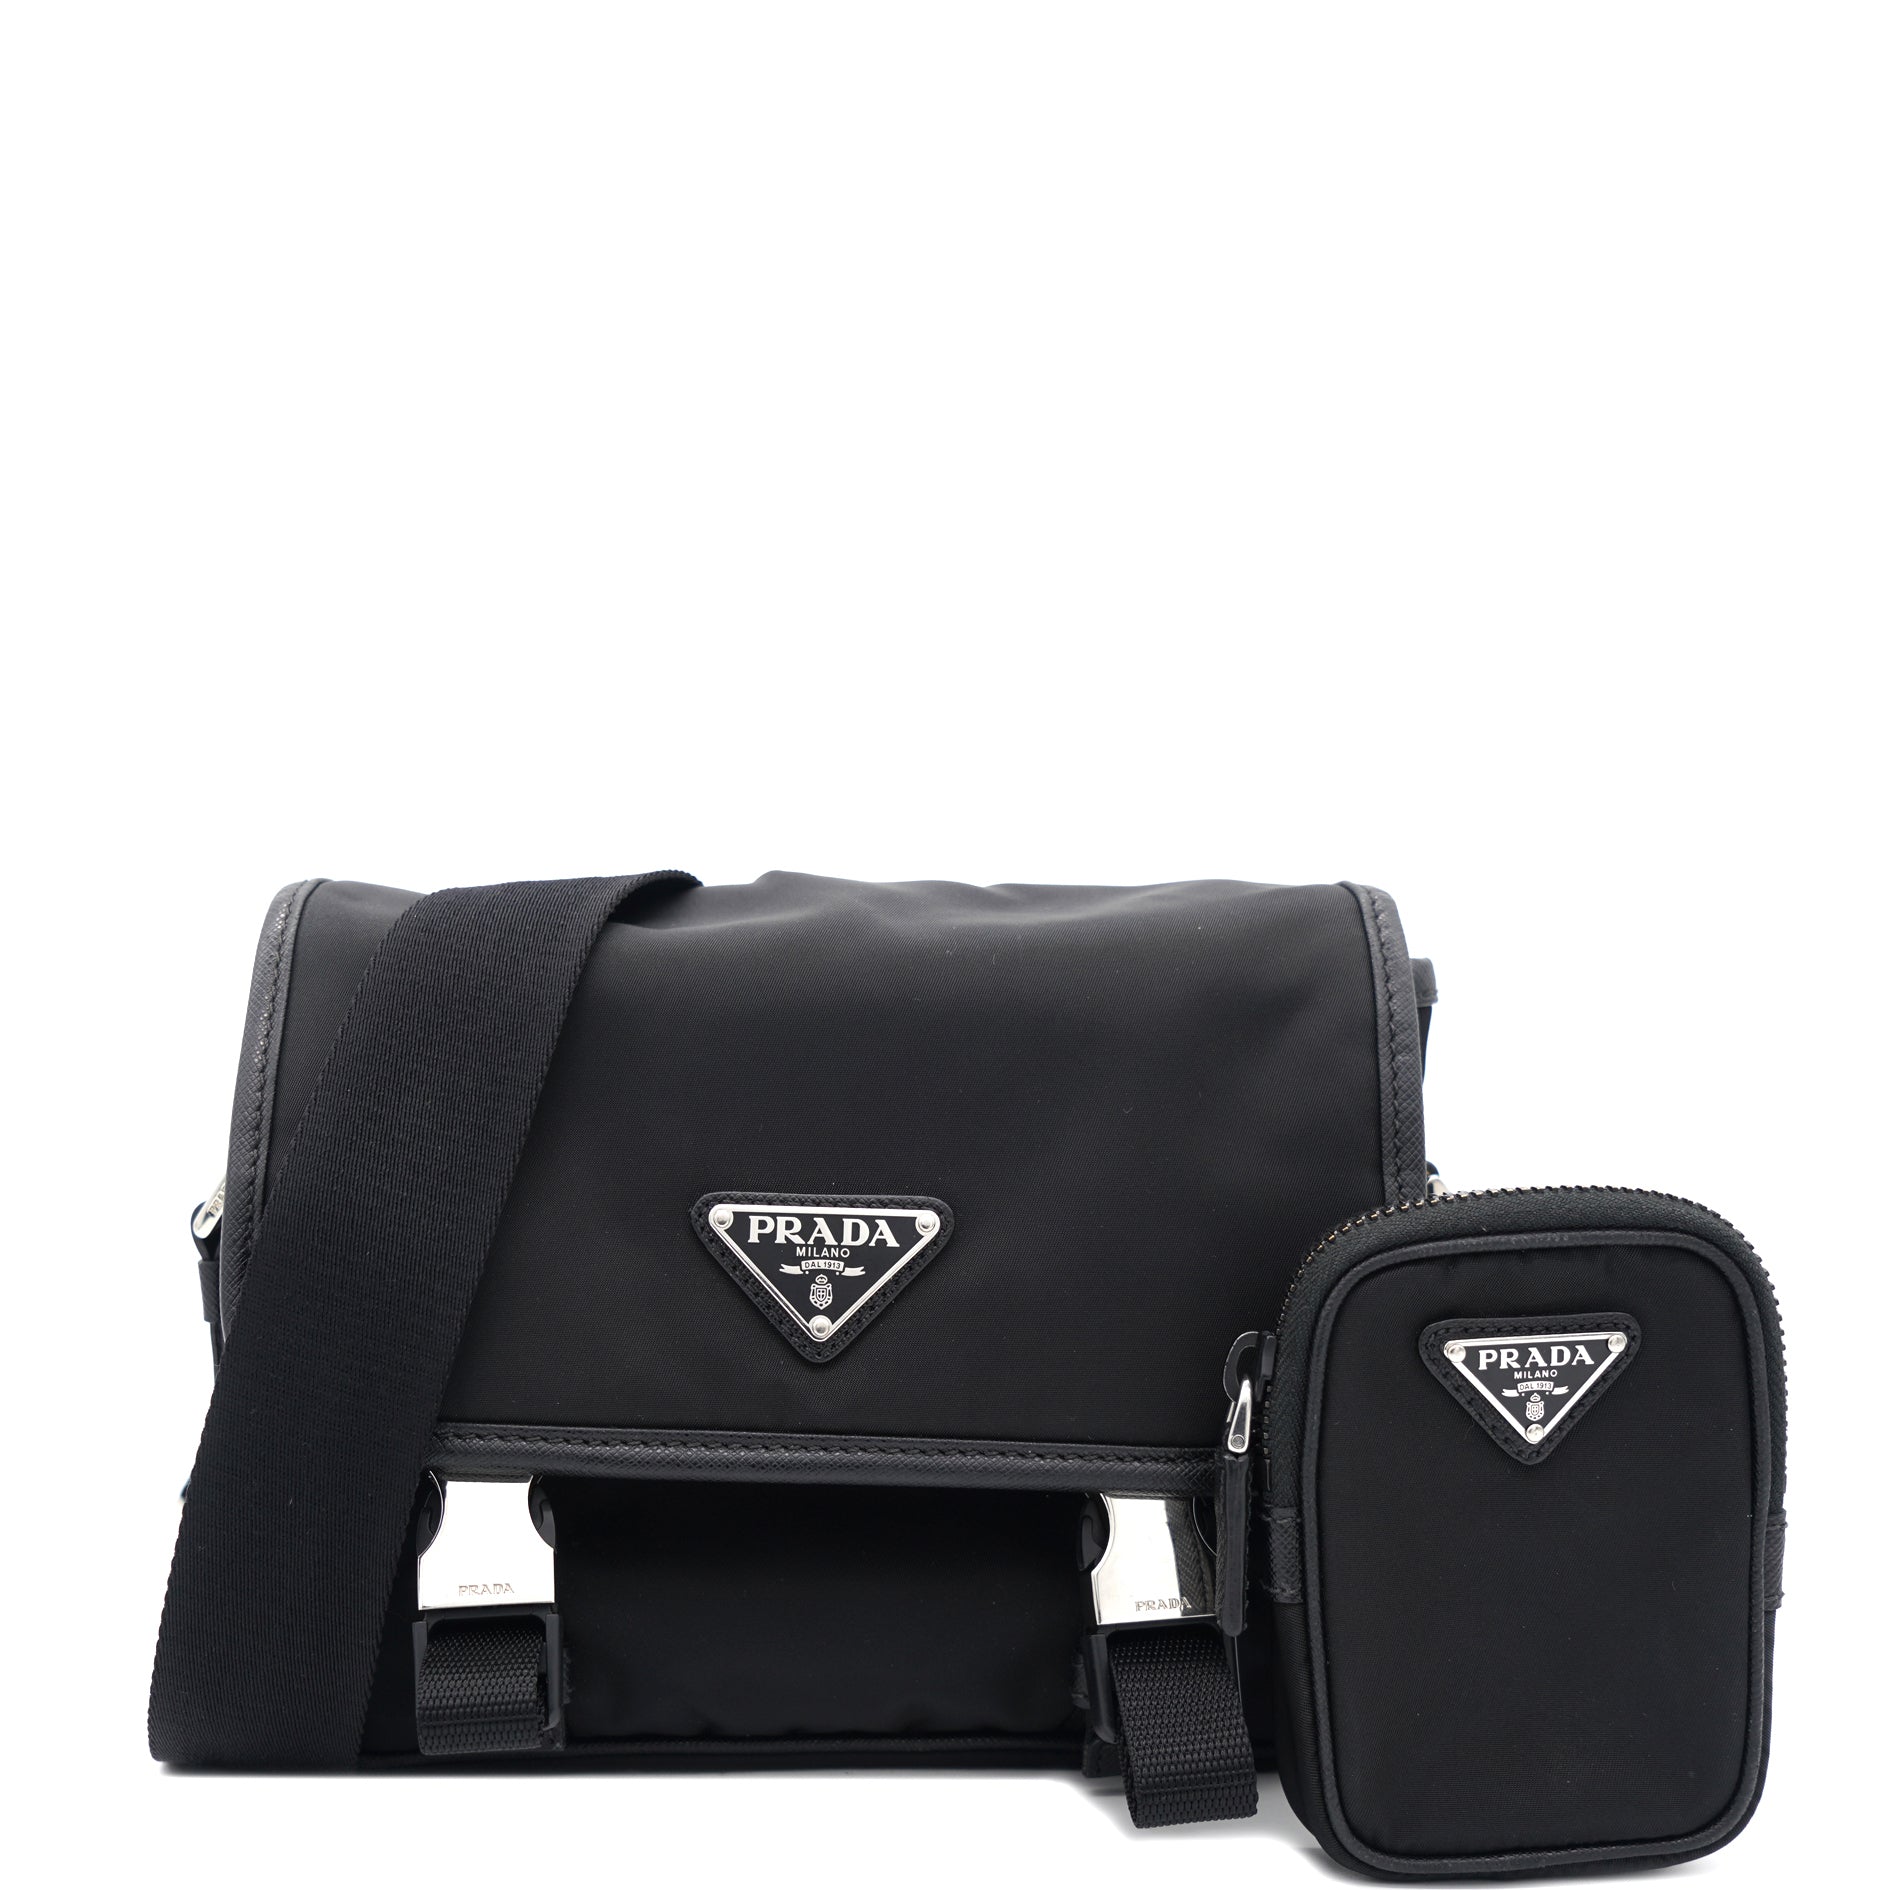 Prada Re-Nylon Saffiano Leather Shoulder Bag